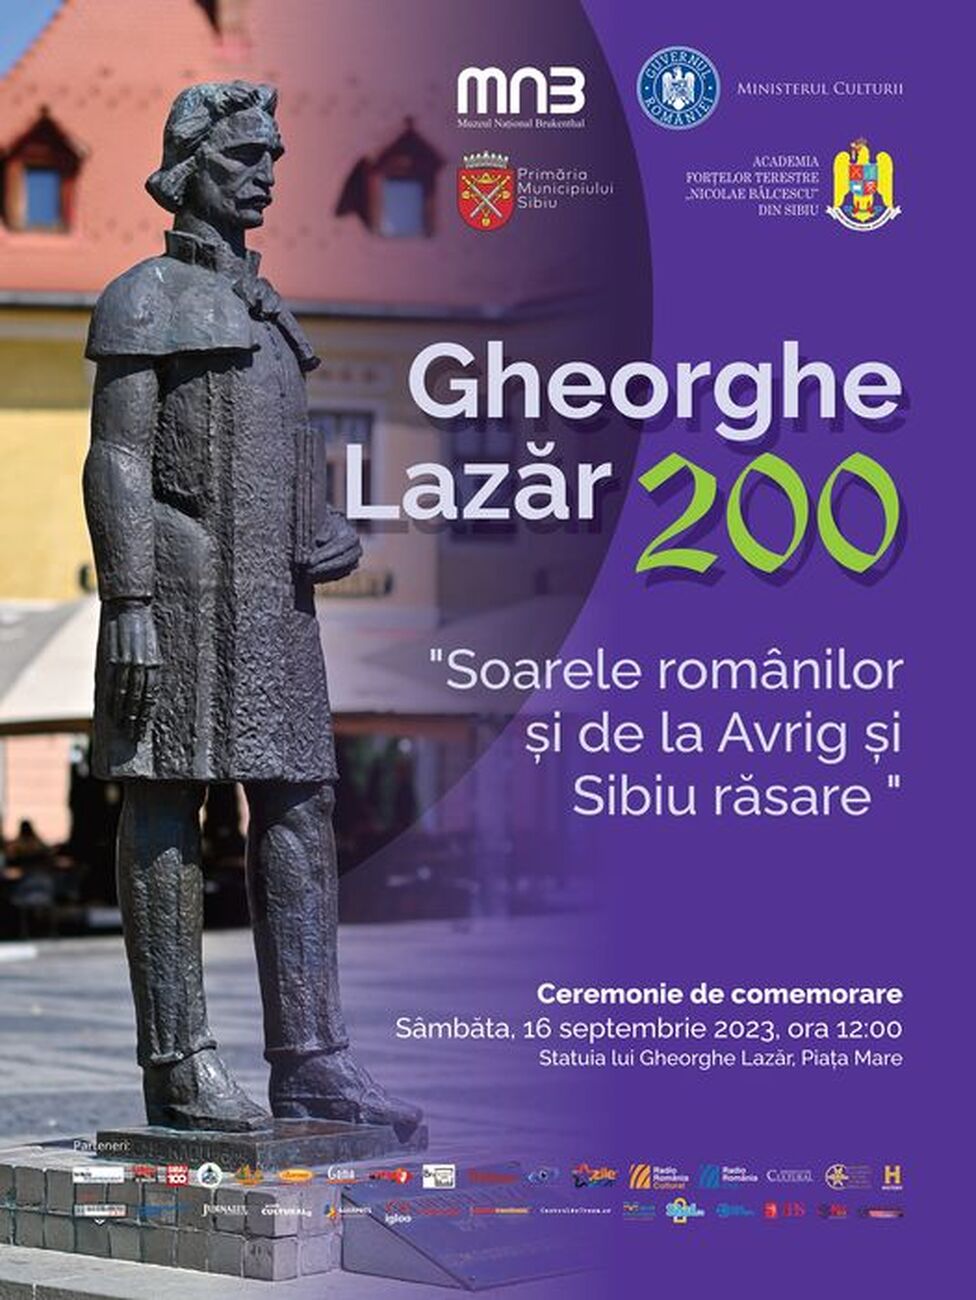 Gheorghe Lazăr va fi comemorat sâmbătă în Piața Mare din Sibiu